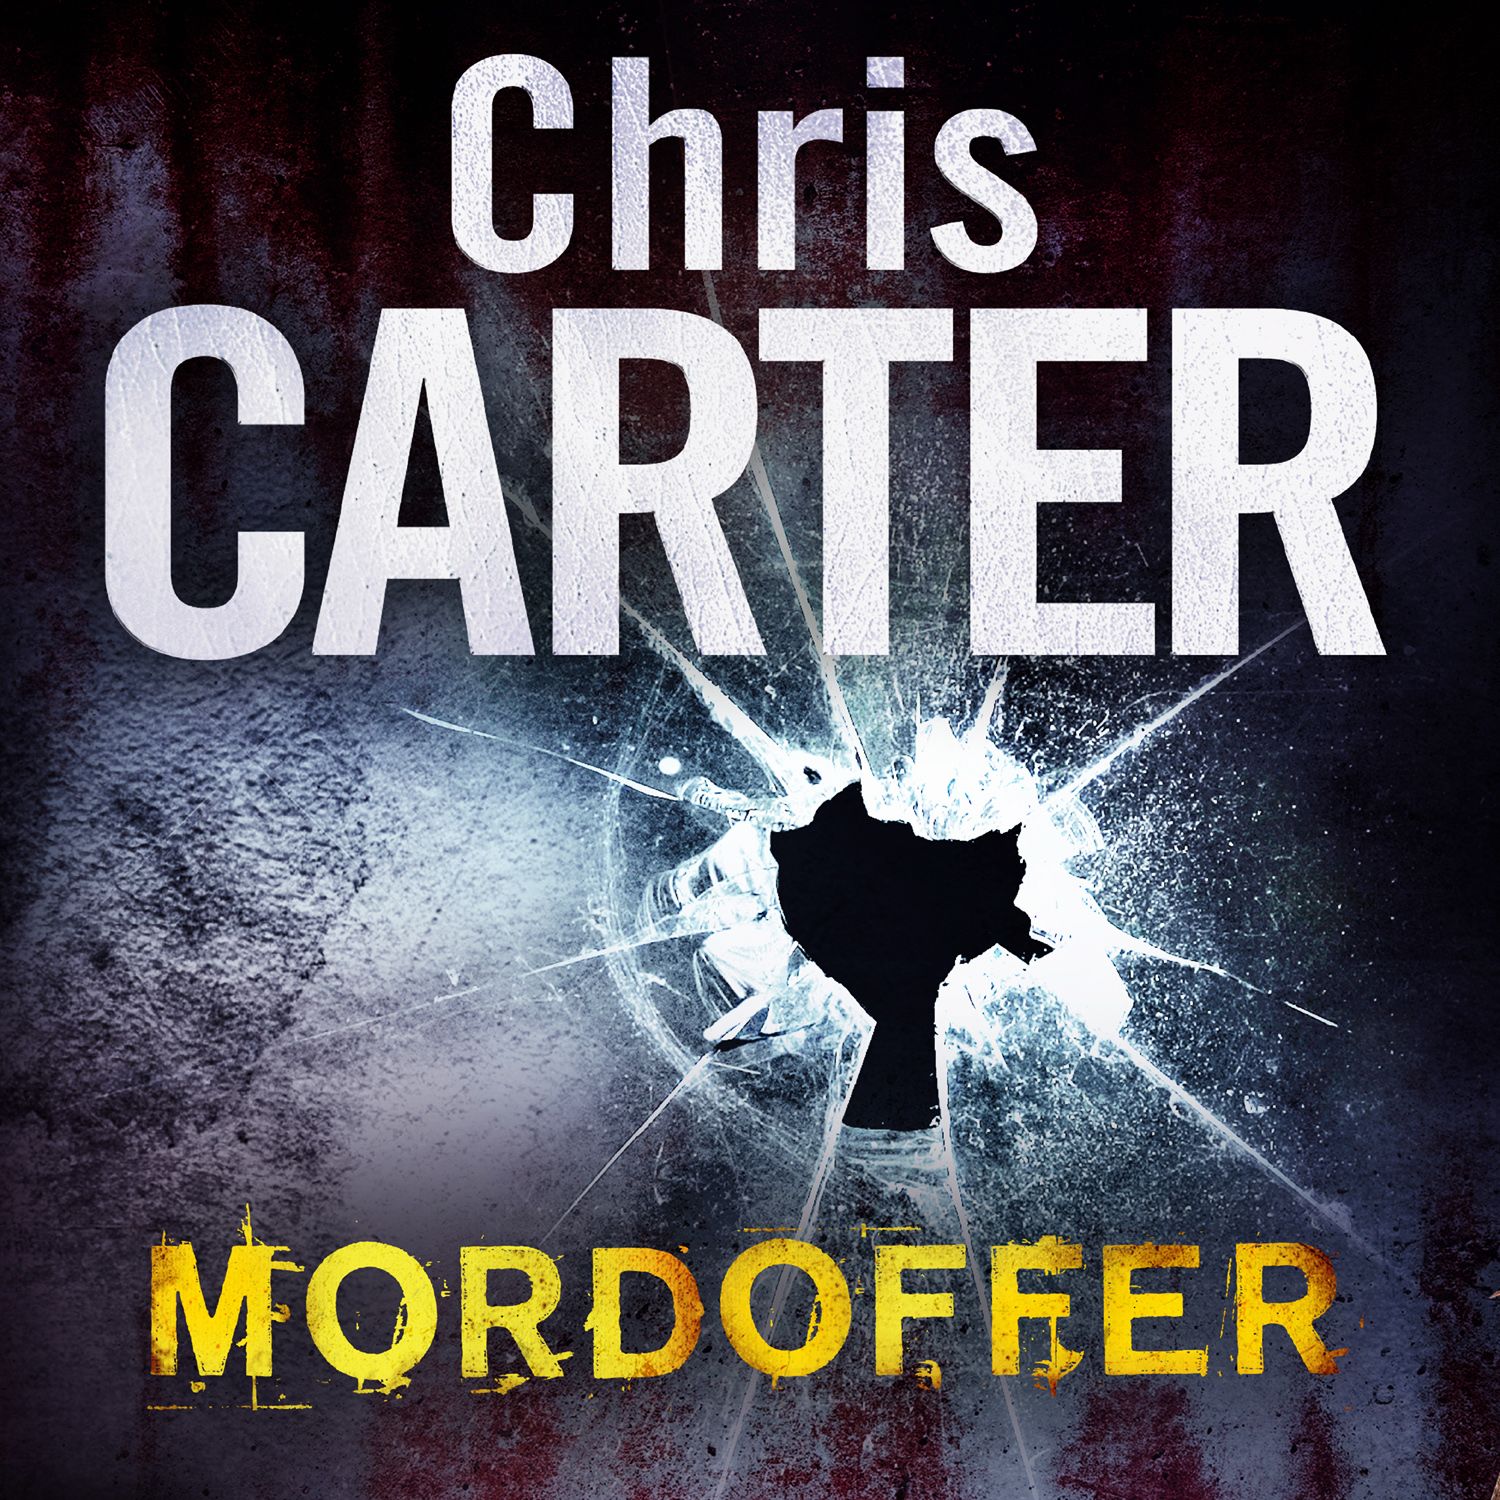 Mordoffer, lydbog af Chris Carter